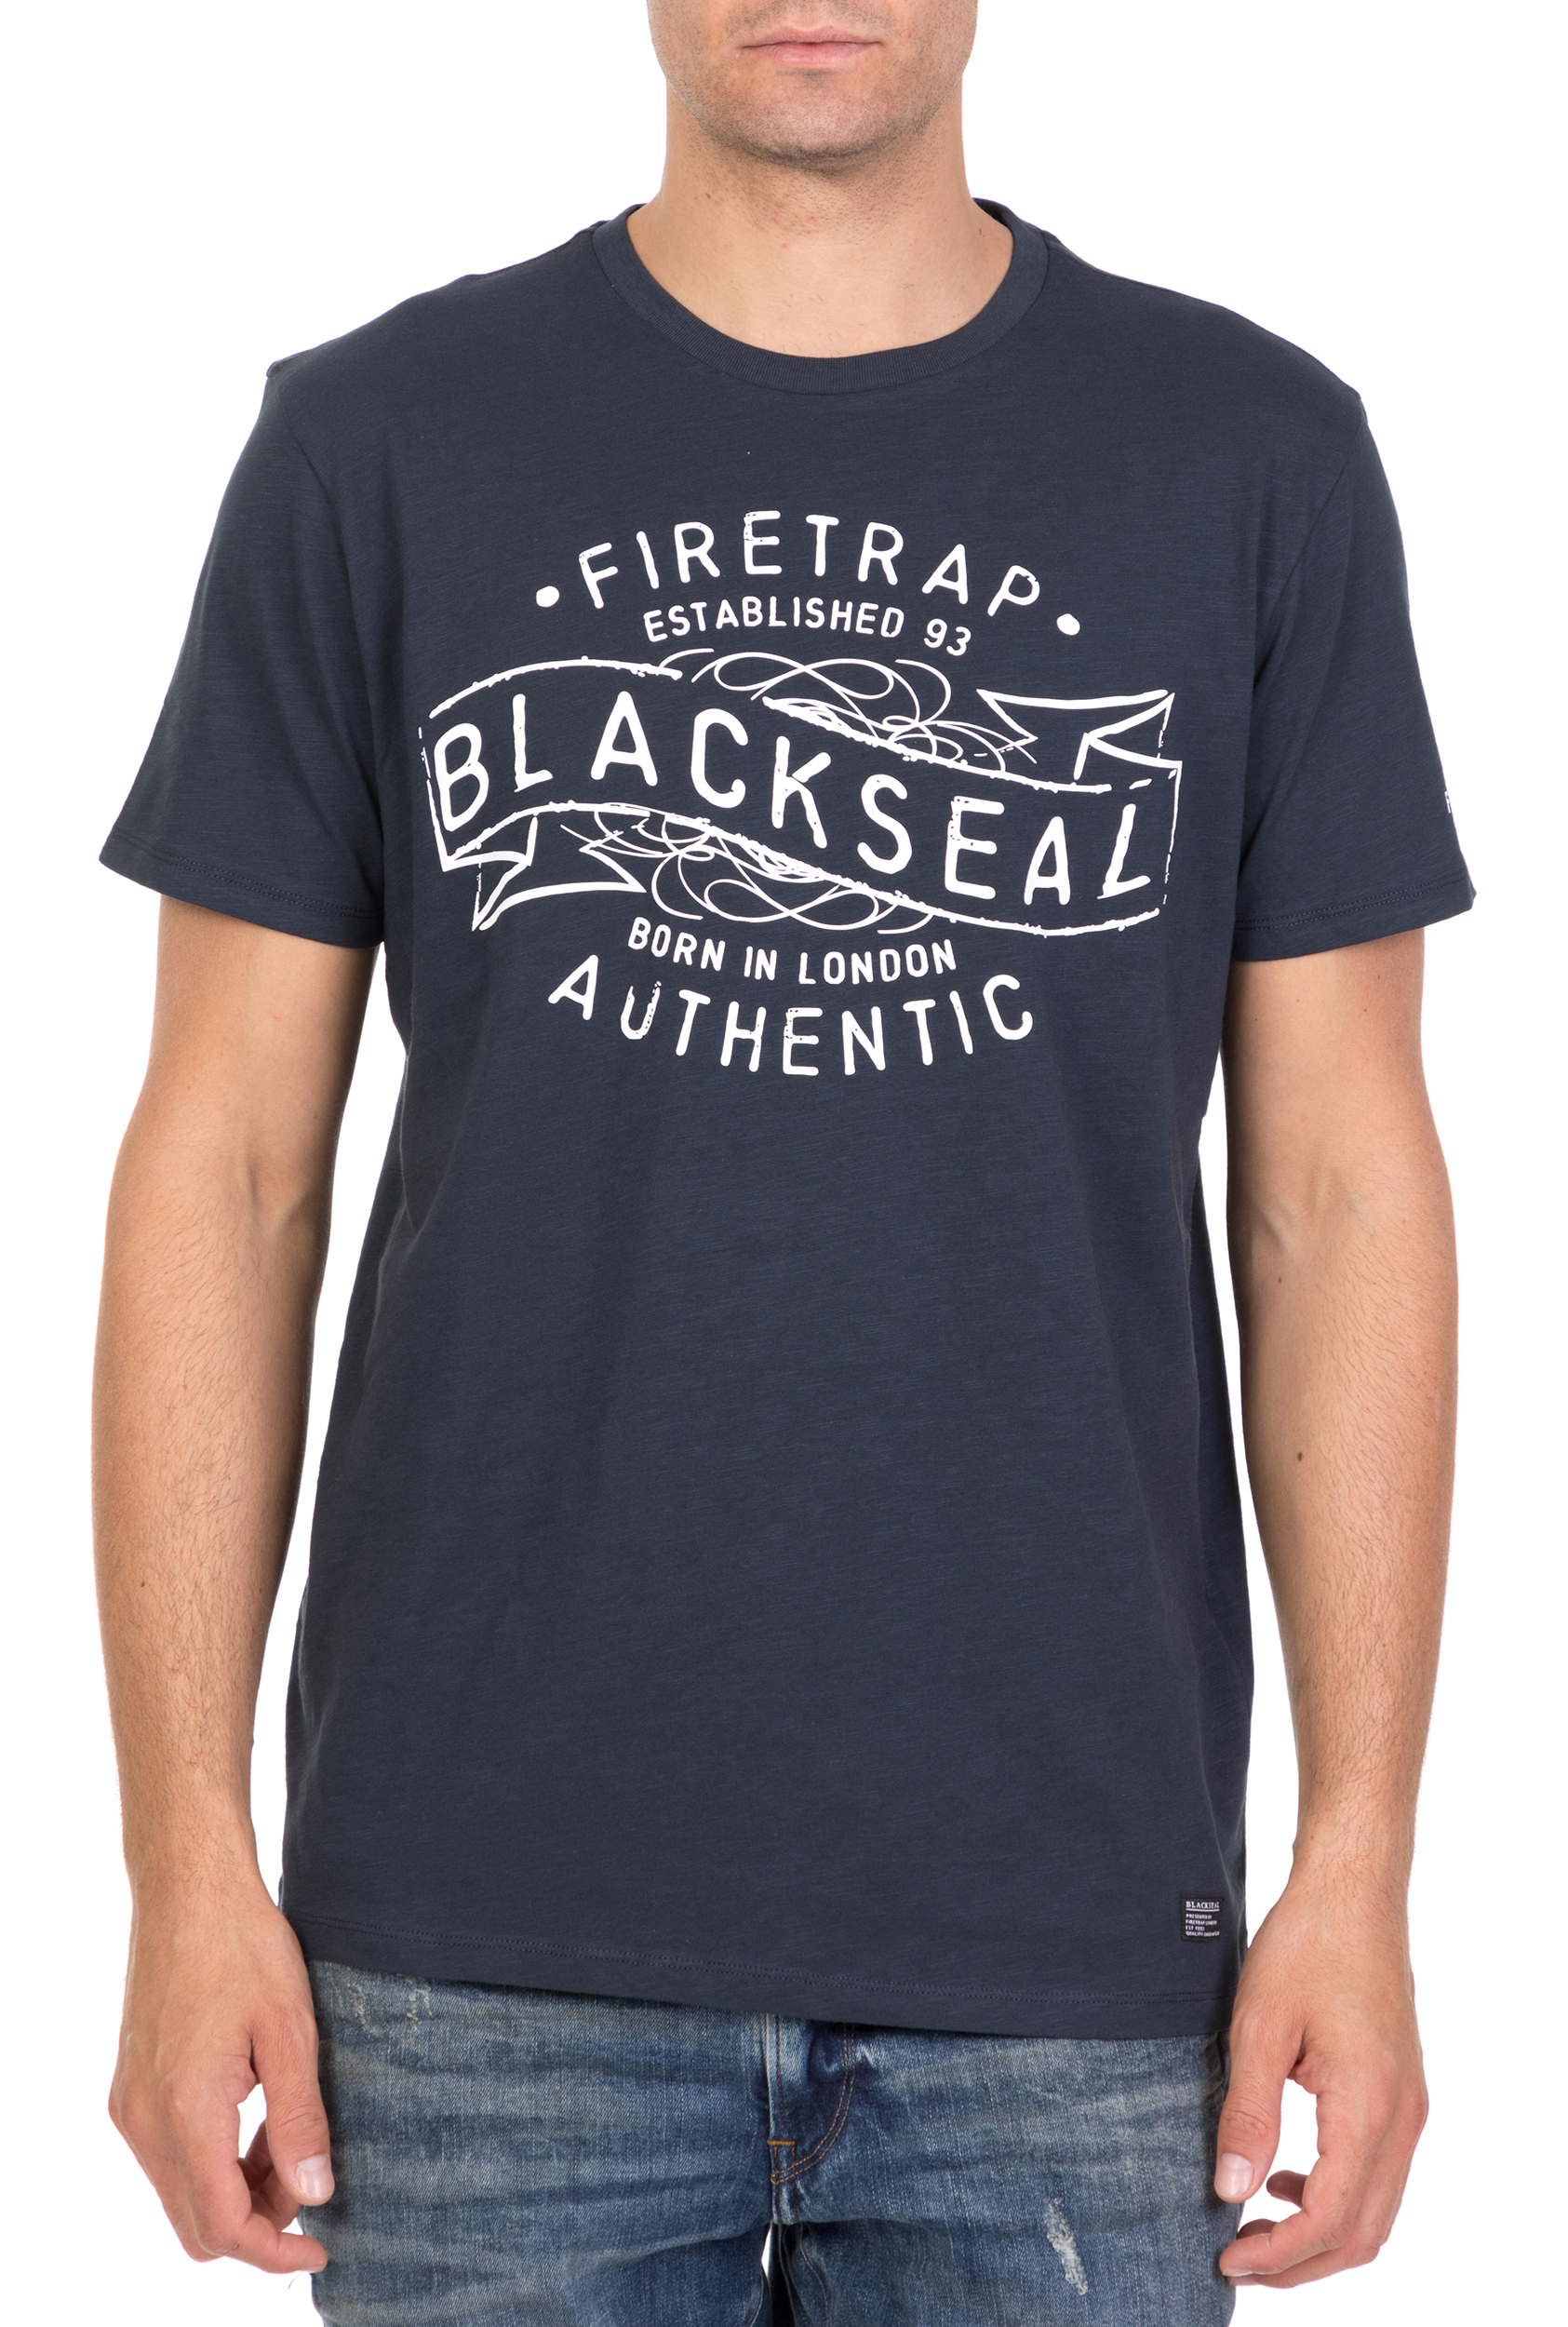 Ανδρικά/Ρούχα/Μπλούζες/Κοντομάνικες FIRETRAP - Ανδρική κοντομάνικη μπλούζα Firetrap Cypher μπλε